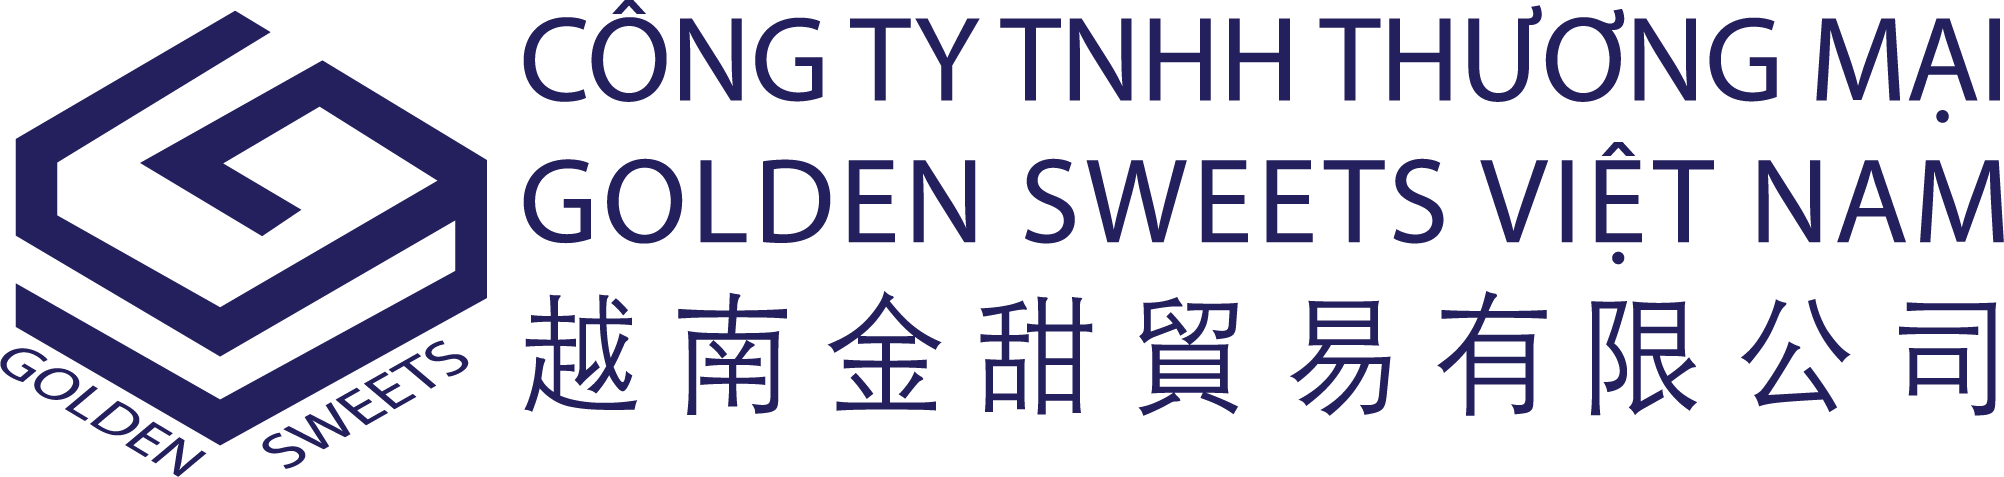 Công ty TNHH Thương mại Golden Sweets Việt Nam